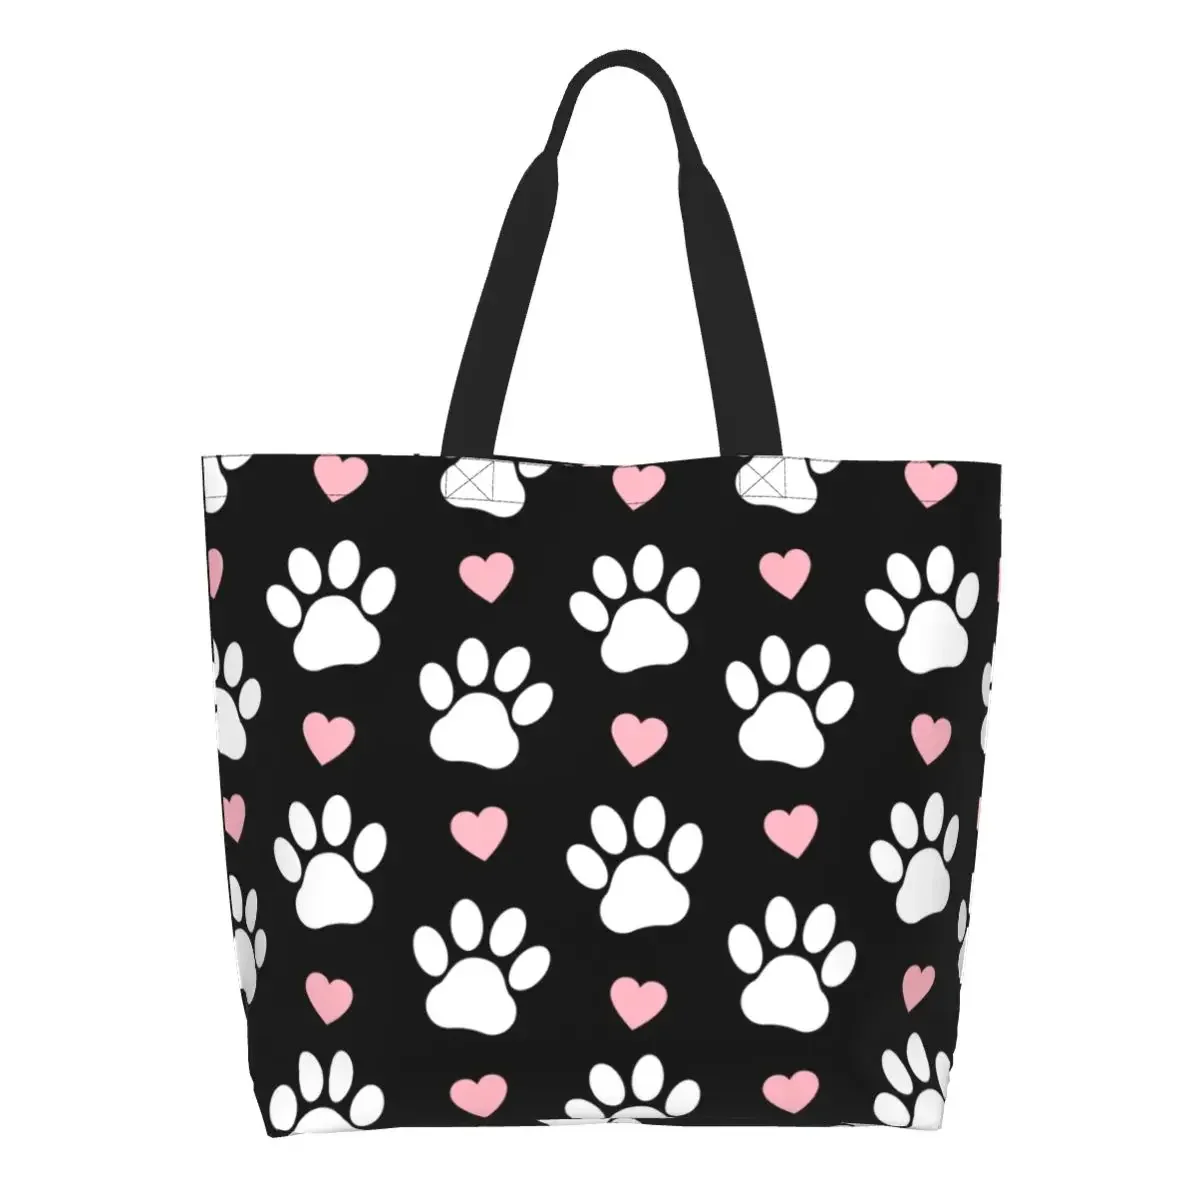 Узор из лап Белая собачья лапа, сумки для покупок в продуктовых магазинах, розовые сердечки, холщовая сумка для покупок для щенков, сумки большой емкости